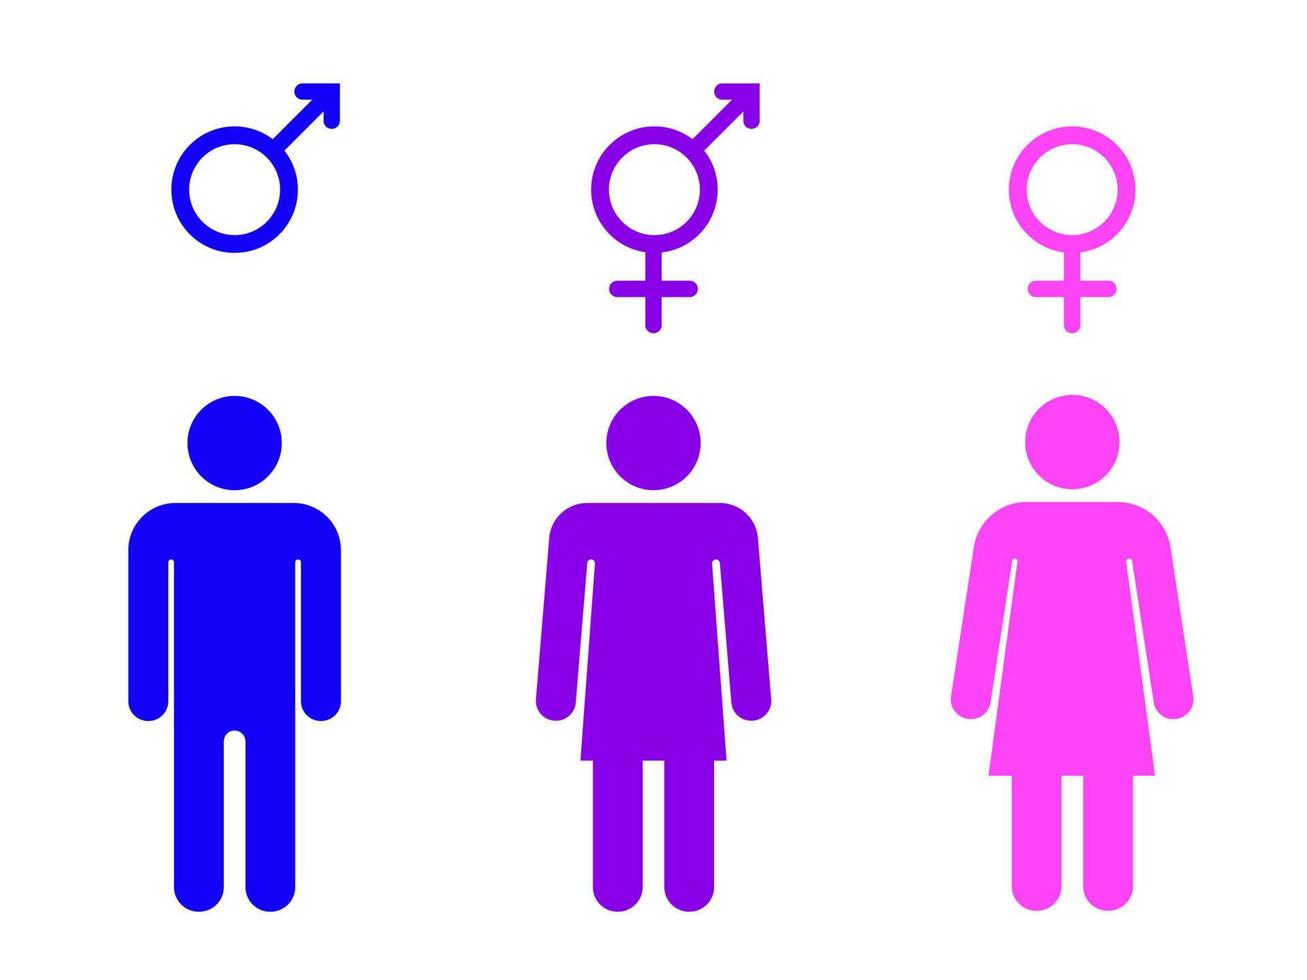 impostato di Genere simboli con stilizzato sagome - maschio, femmina e unisex o transgender. isolato vettore illustrazione